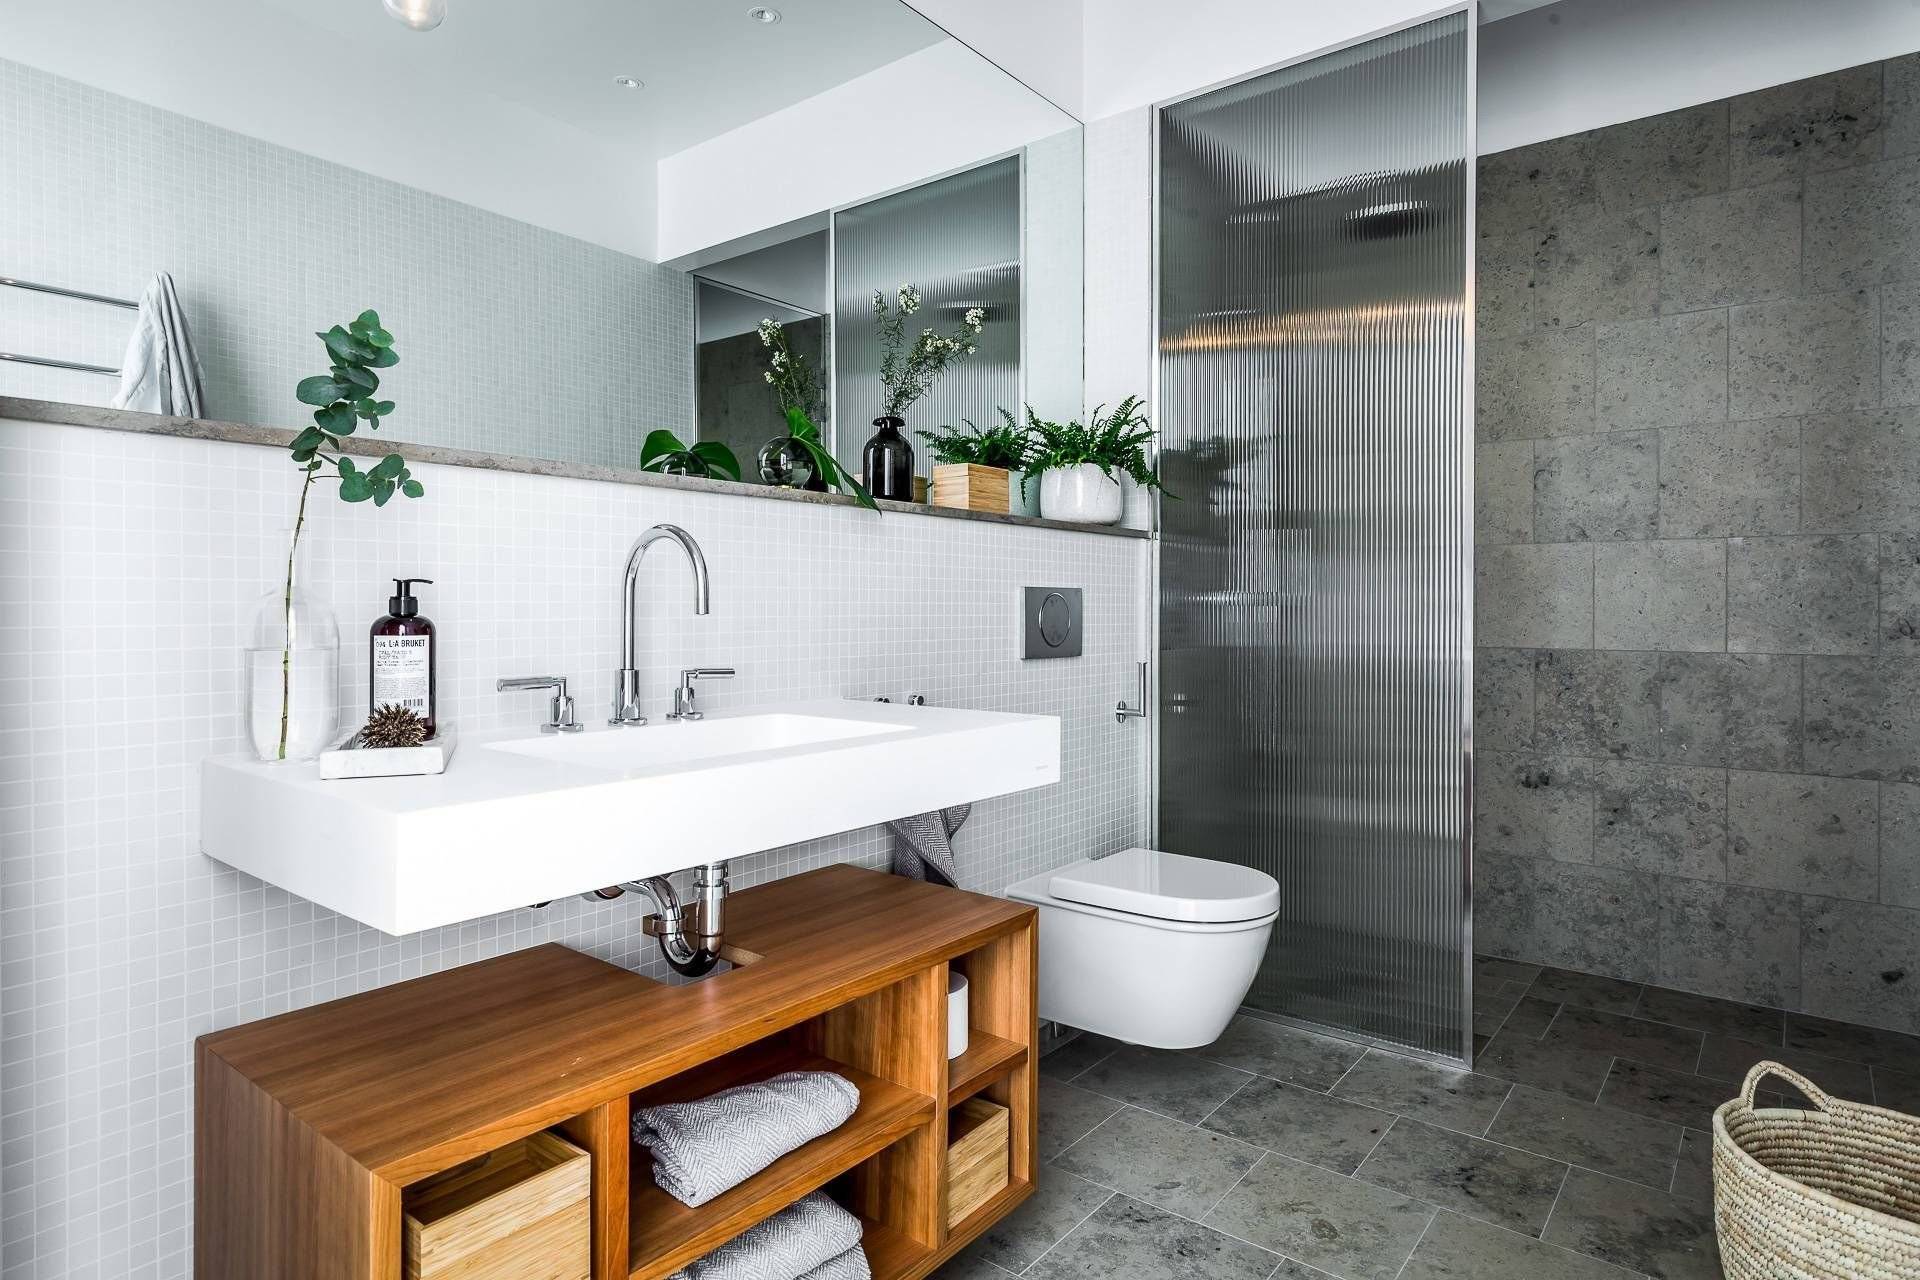 Ванная комната и туалет в скандинавском стиле: особенности дизайна, выбор плитки, ремонт санузла, маленькая ванна, фото